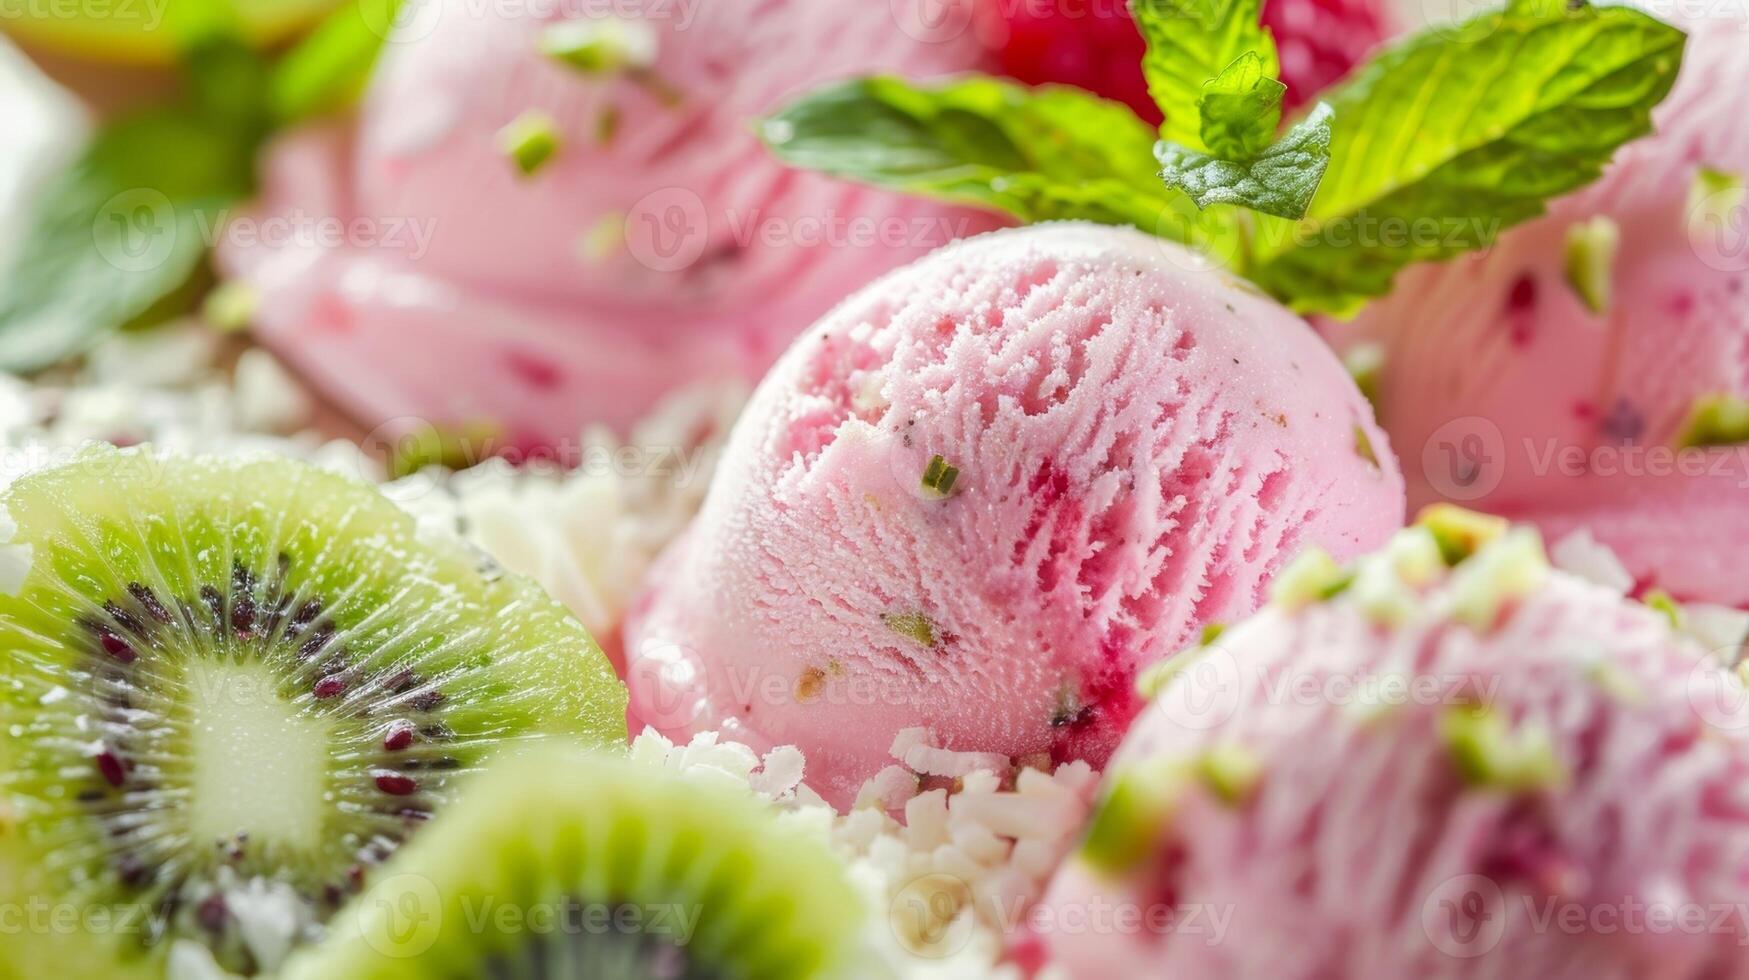 un oportunidad a gusto el zona tropical con único hielo crema sabores me gusta lychee y kiwi foto